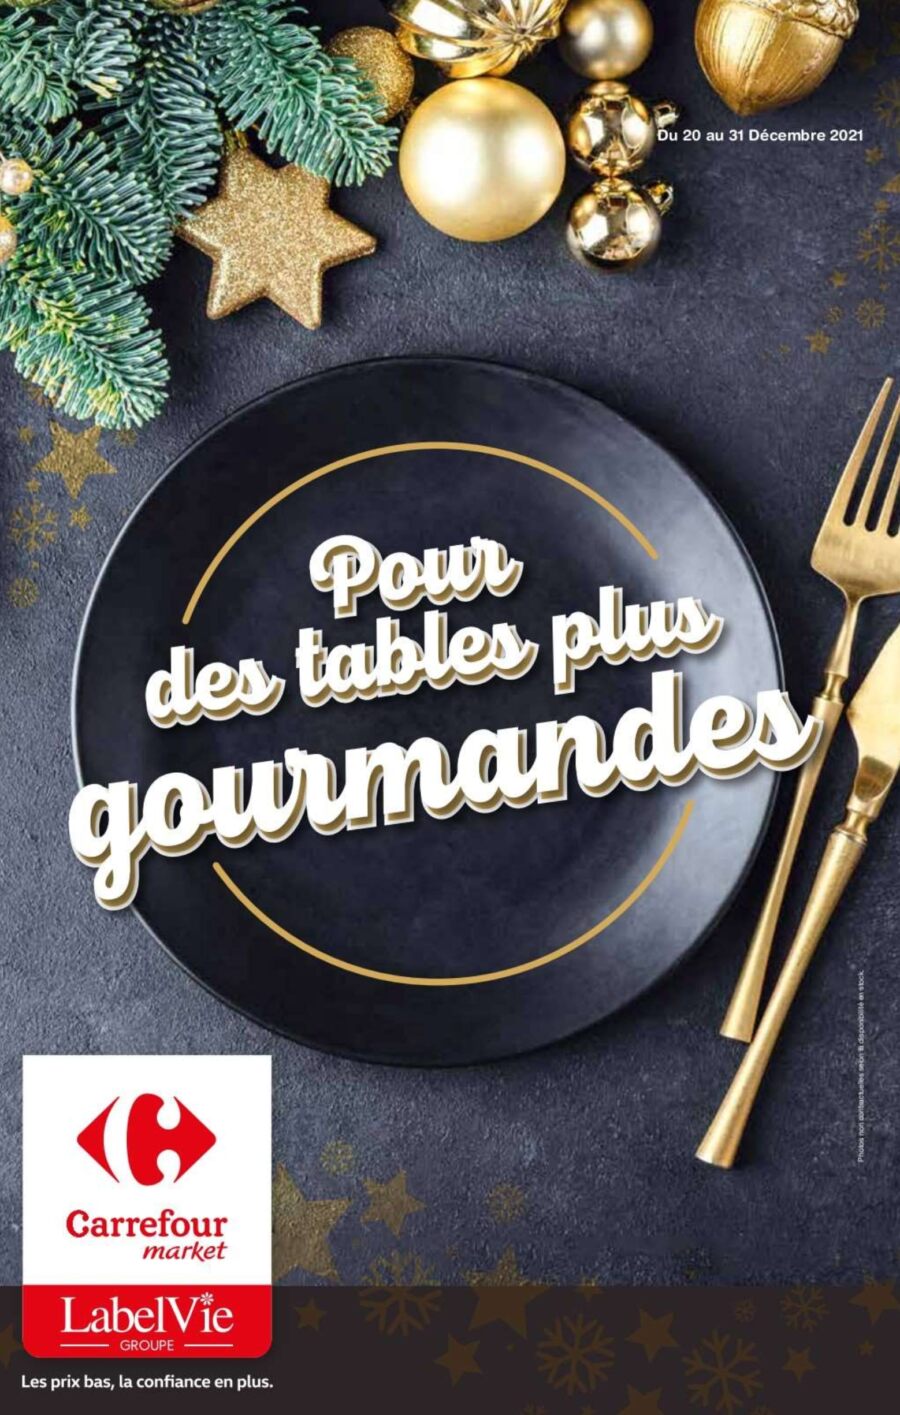 Catalogue Carrefour Market Maroc Pour des tables gourmandes du 20 au 31 décembre 2021